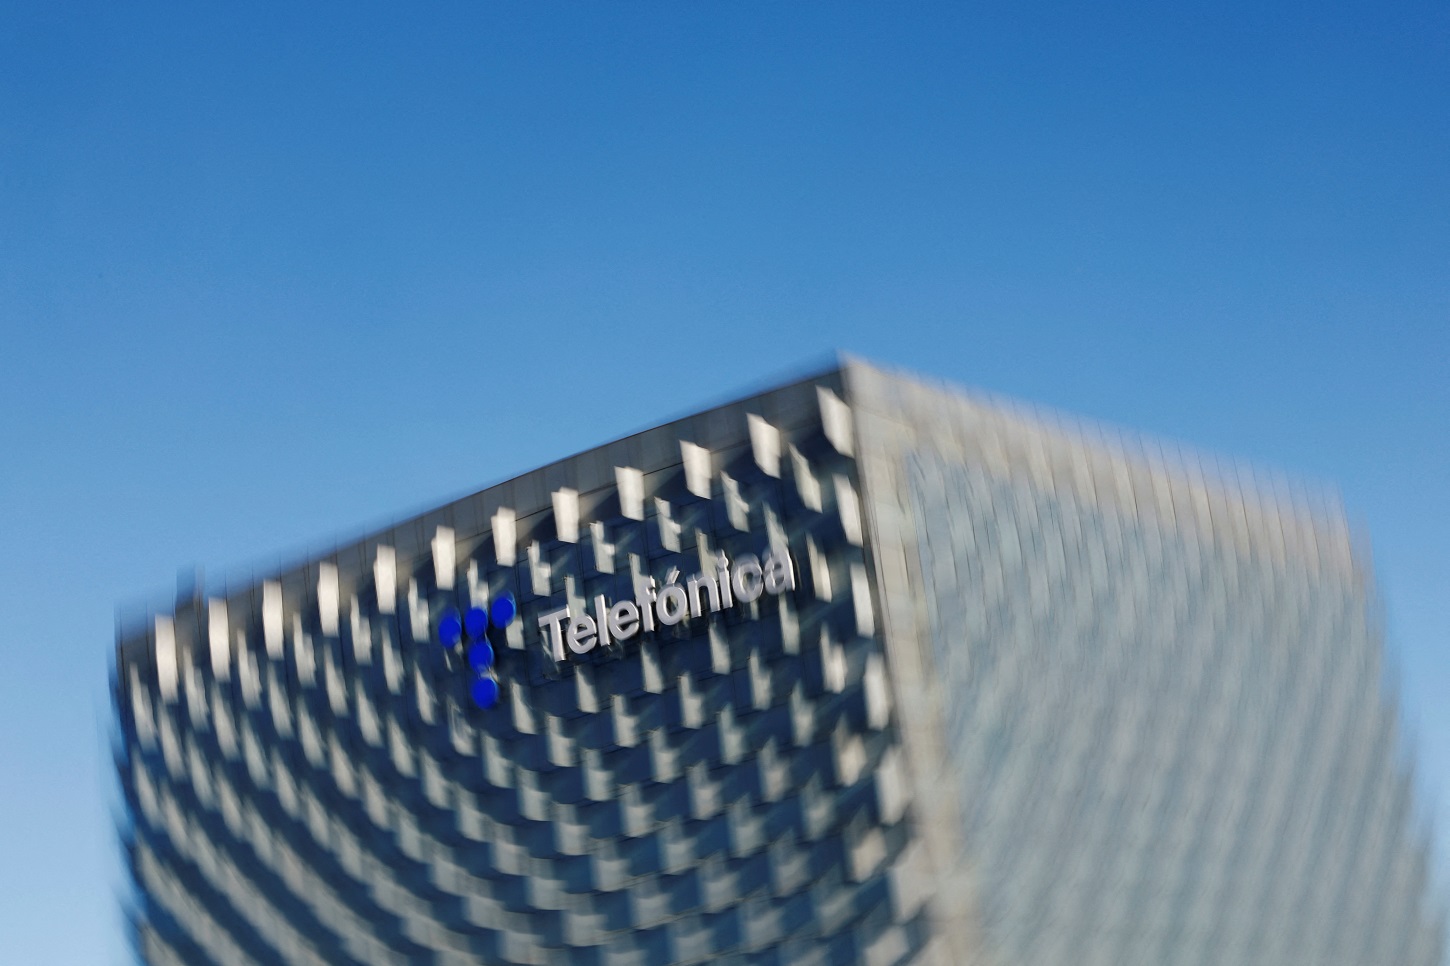 El logo de Telefónica, en su sede corporativa en la zona norte de Madrid. REUTERS/Susana Vera